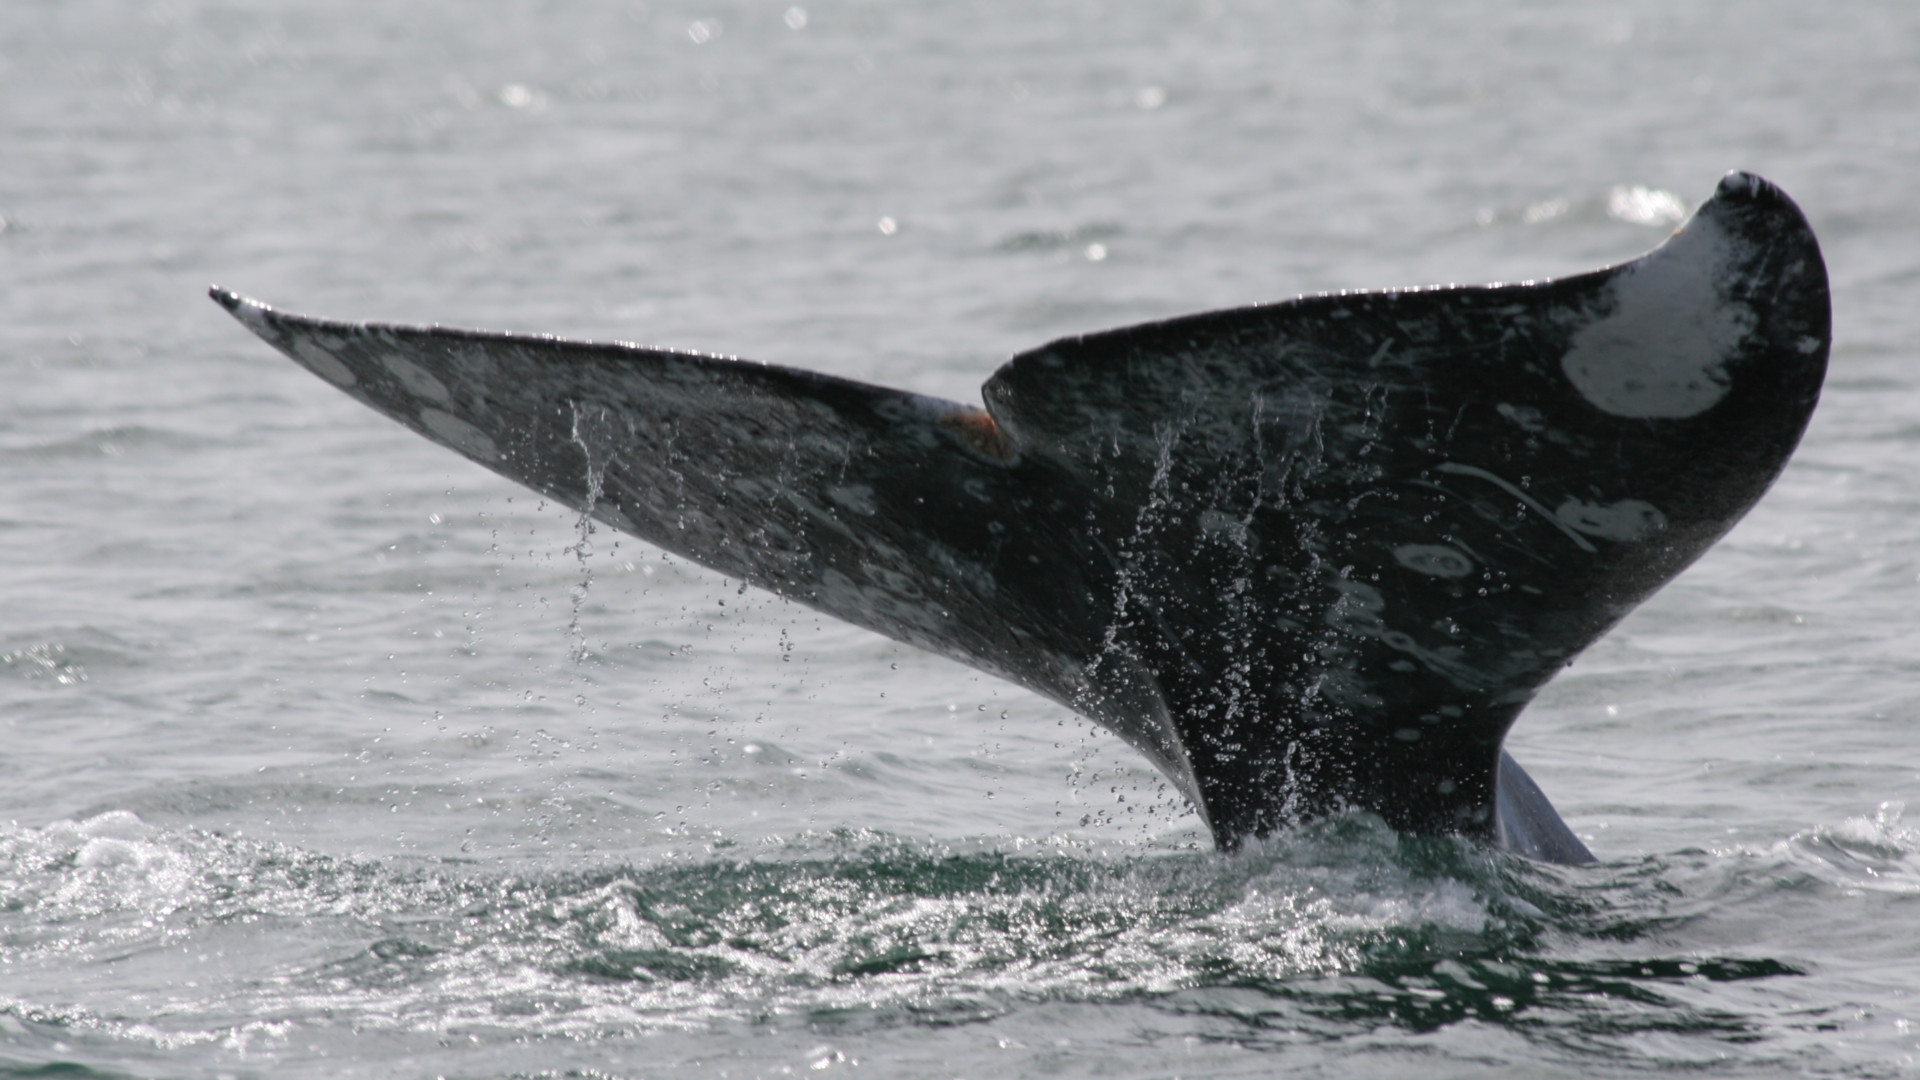 gray whale fluke